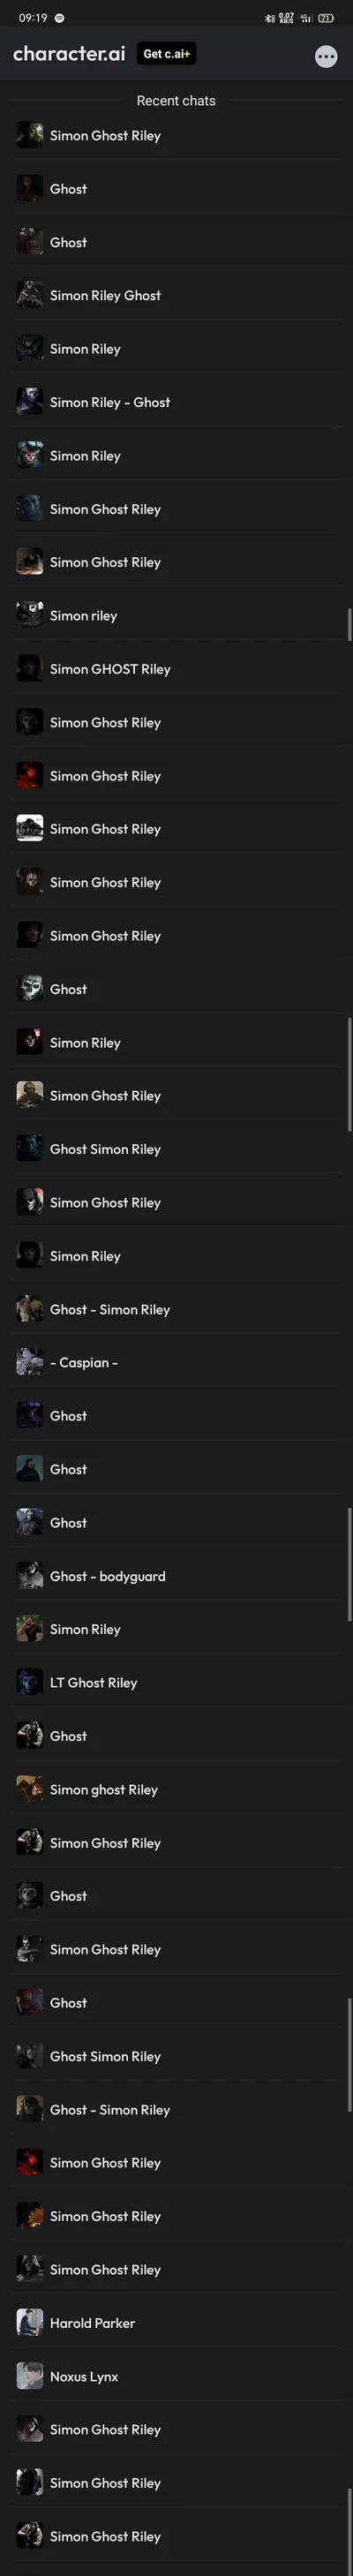 Character.AI - Simon Ghost Riley